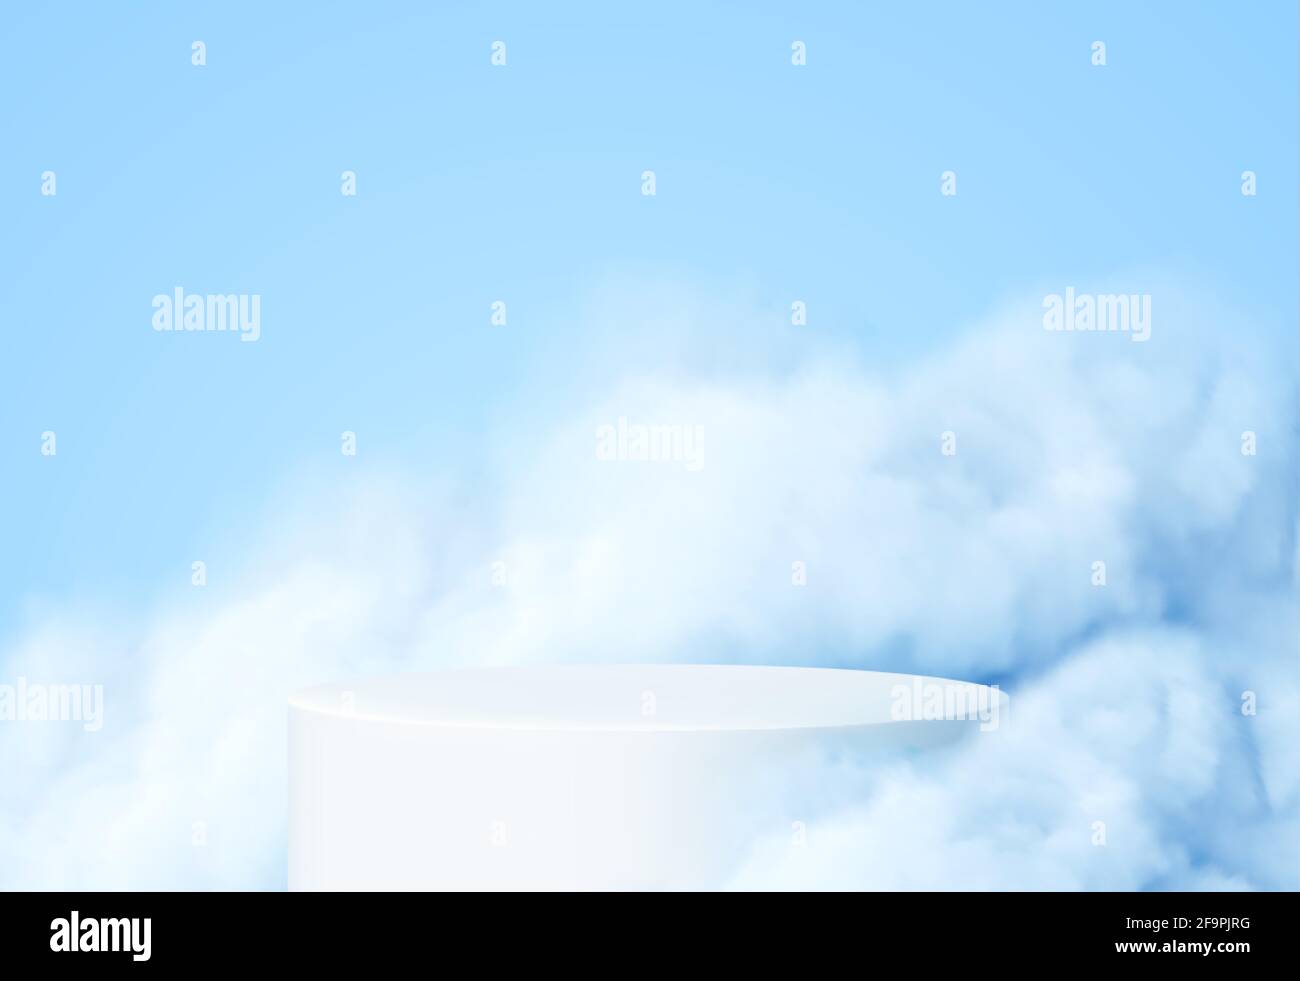 Fondo azul con un podio de productos rodeado de nubes azules. Humo, niebla, fondo de vapor. Ilustración vectorial Ilustración del Vector